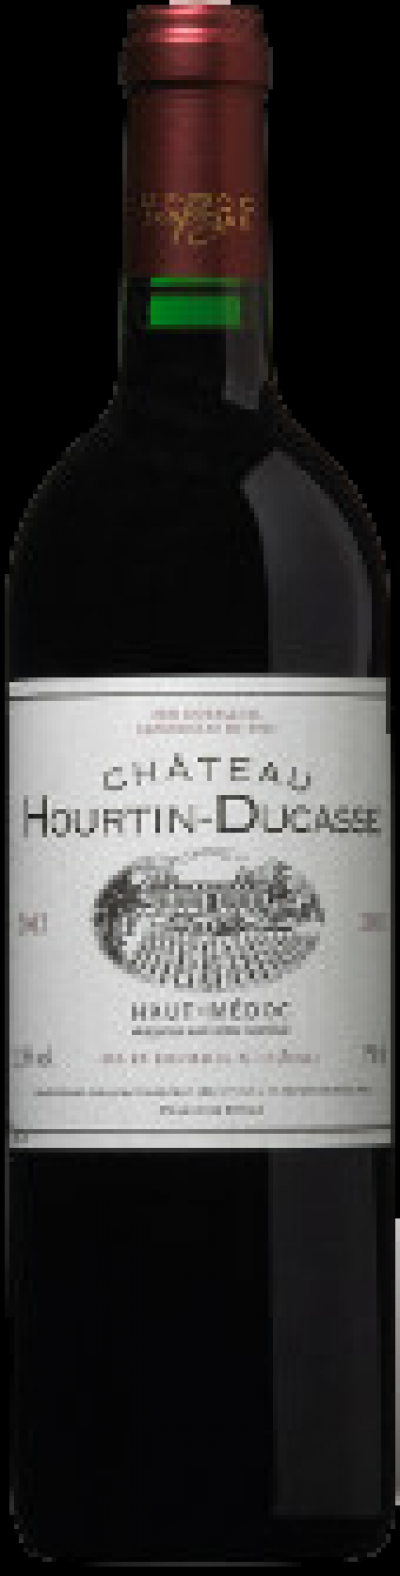 Bordeaux, Château Hourtin-Ducasse 2000, Haut Medoc